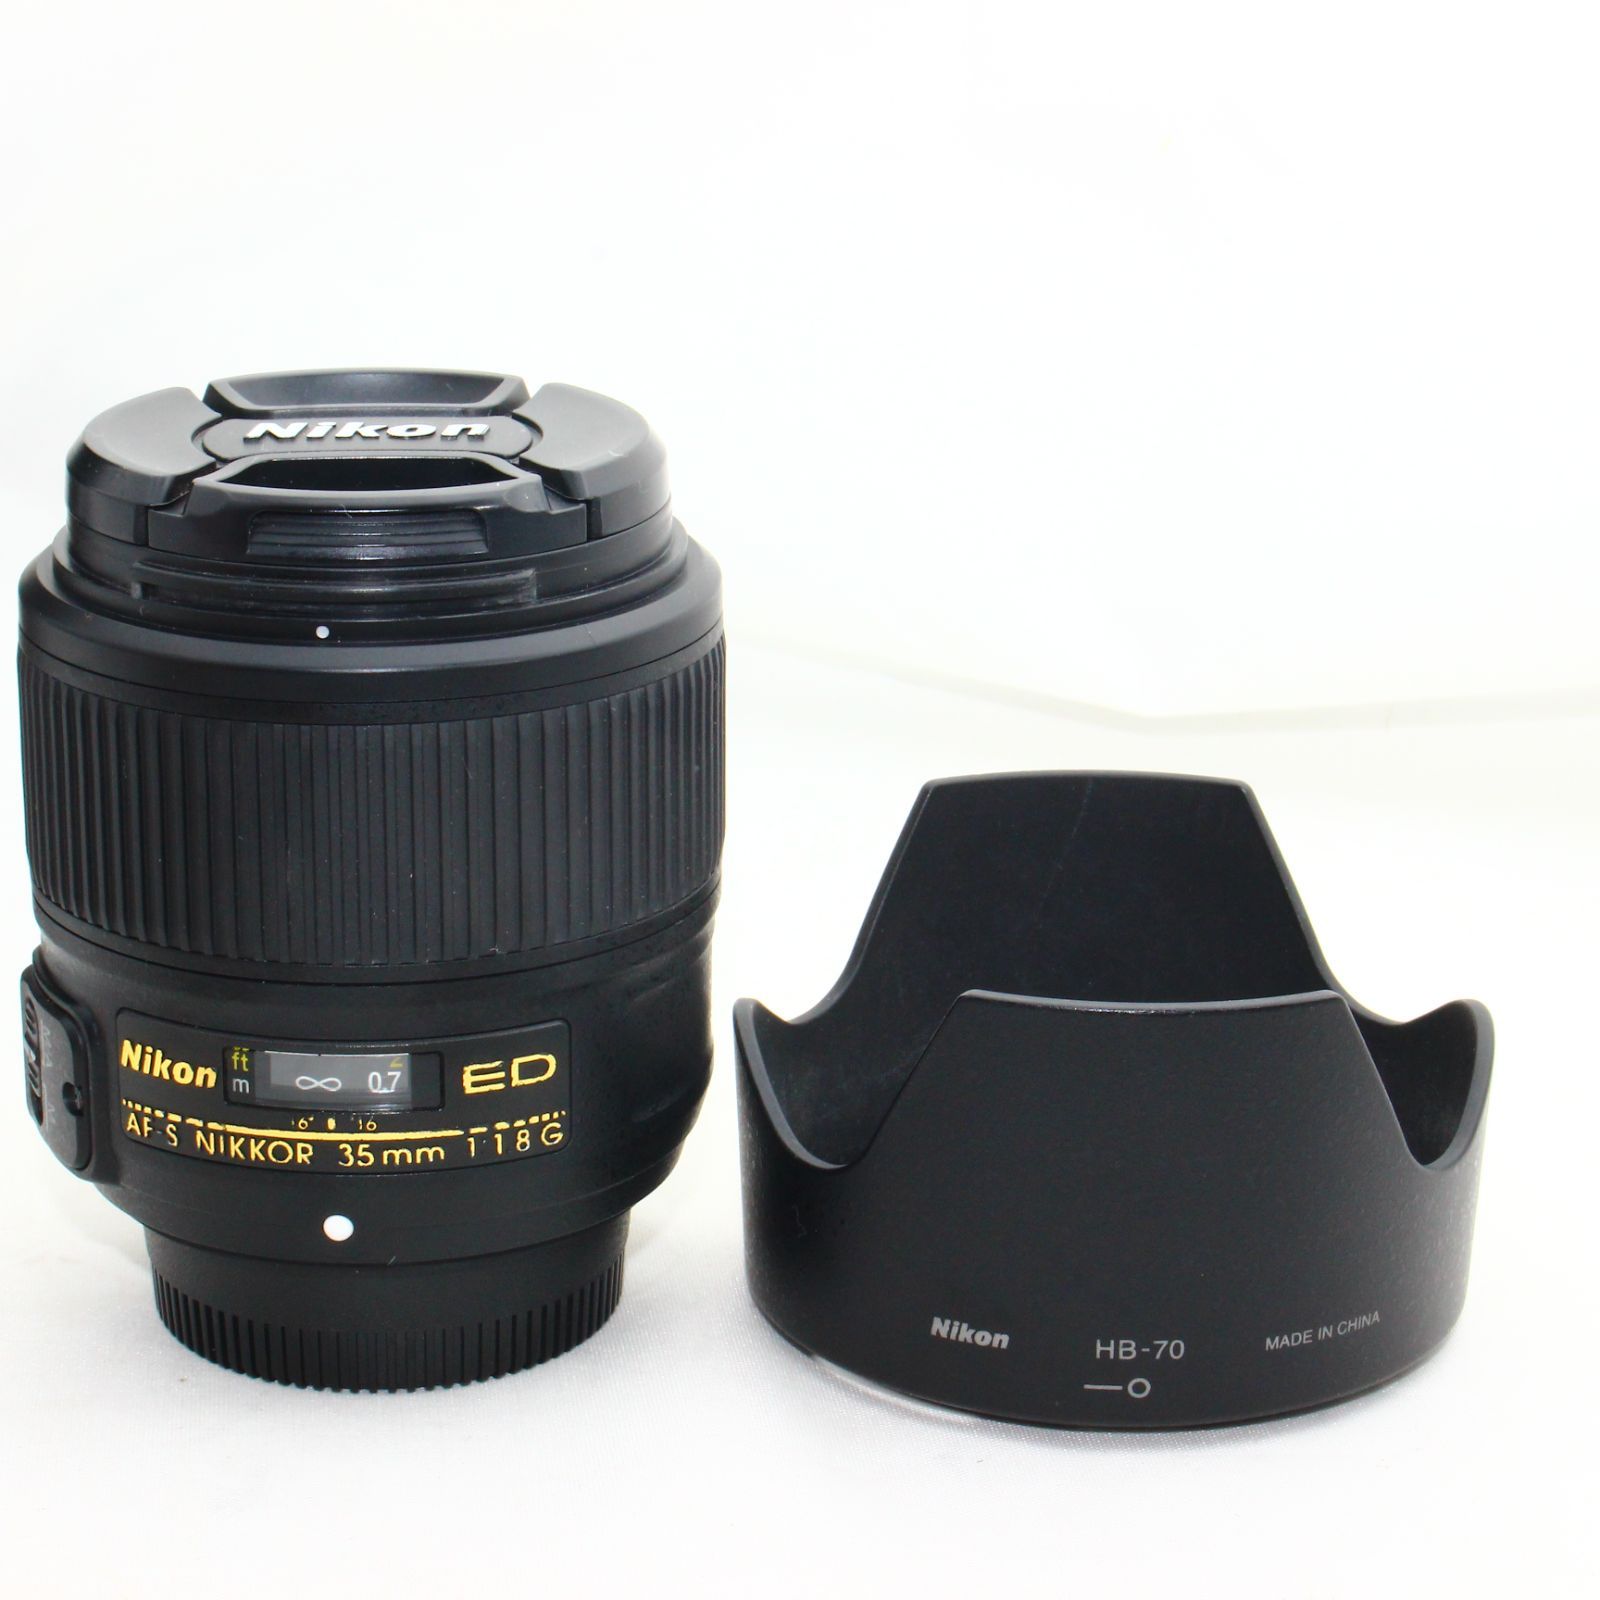 Nikon 単焦点レンズ AF-S NIKKOR 35mm f/1.8G ED フルサイズ対応